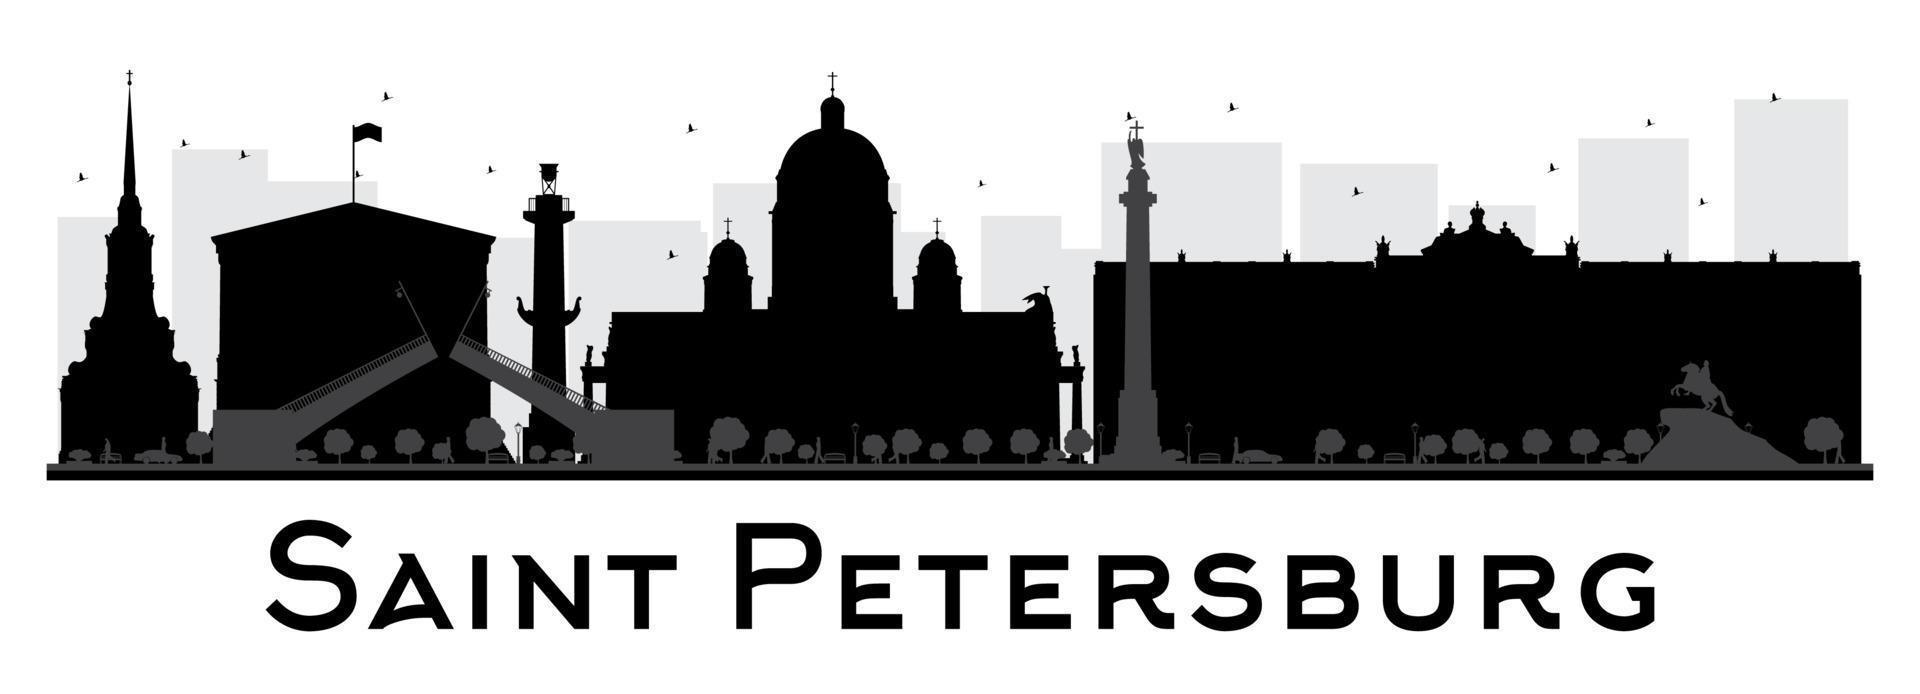 silueta en blanco y negro del horizonte de la ciudad de san petersburgo. vector